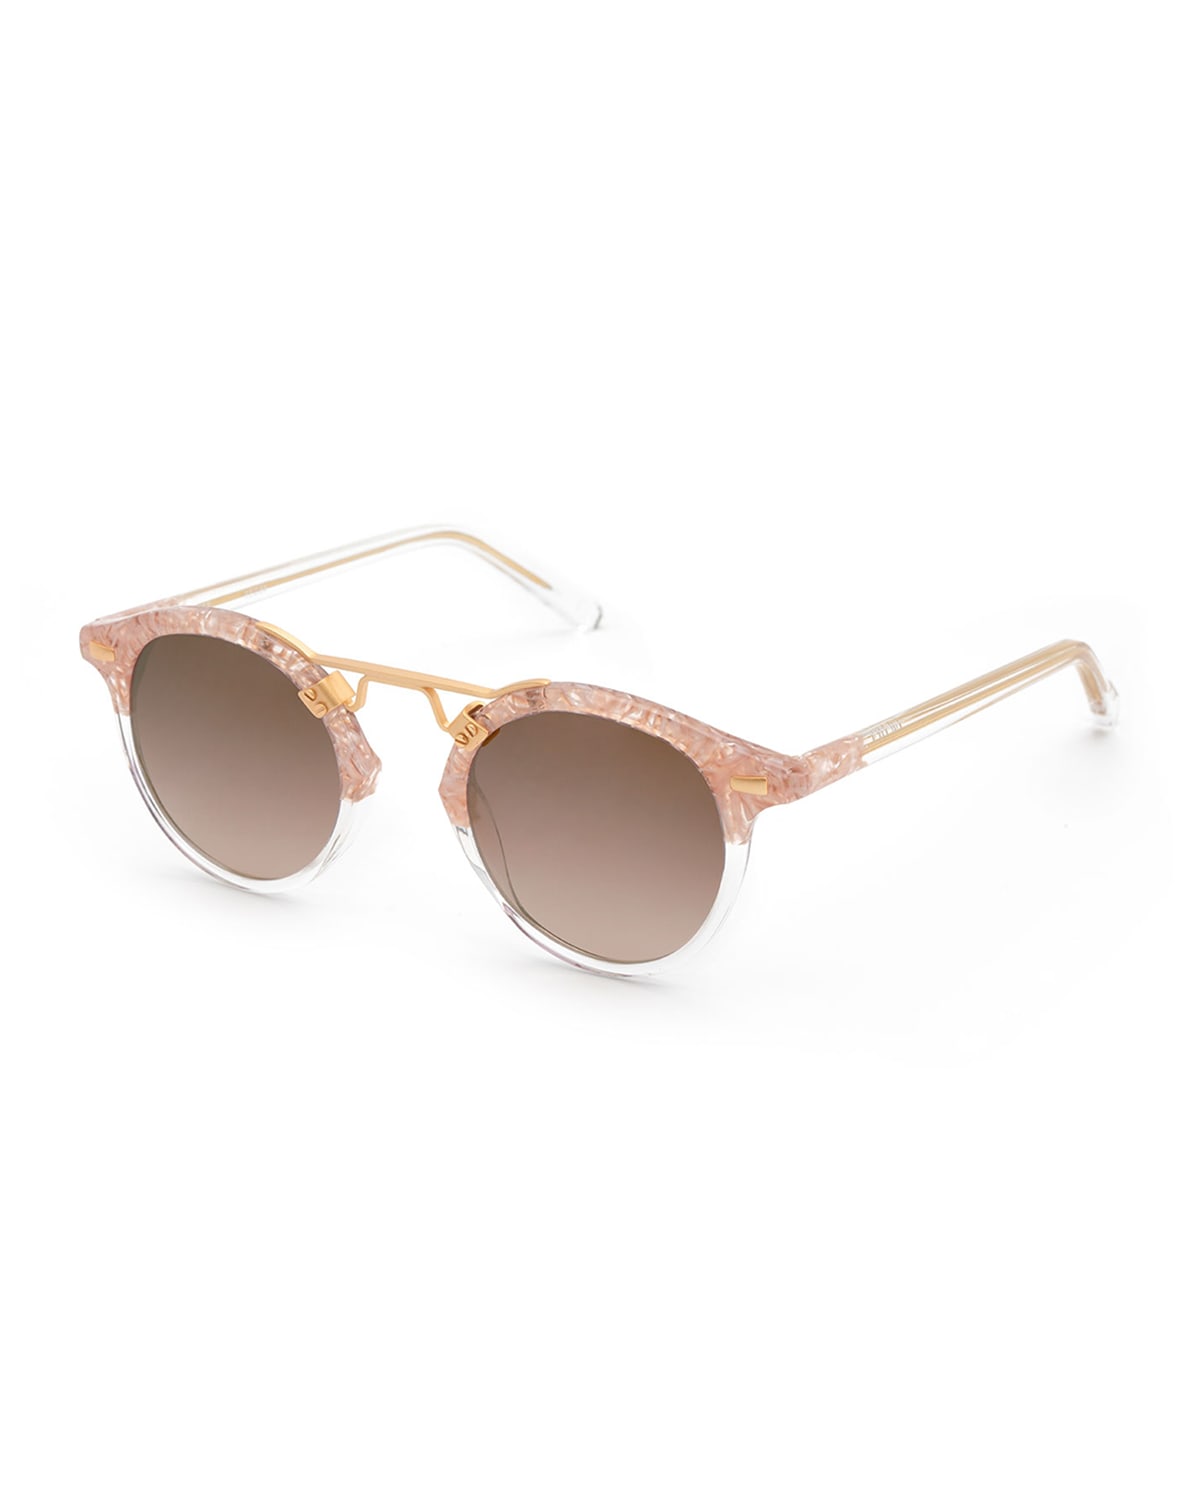 St. Louis Round Sunglasses, Camellia